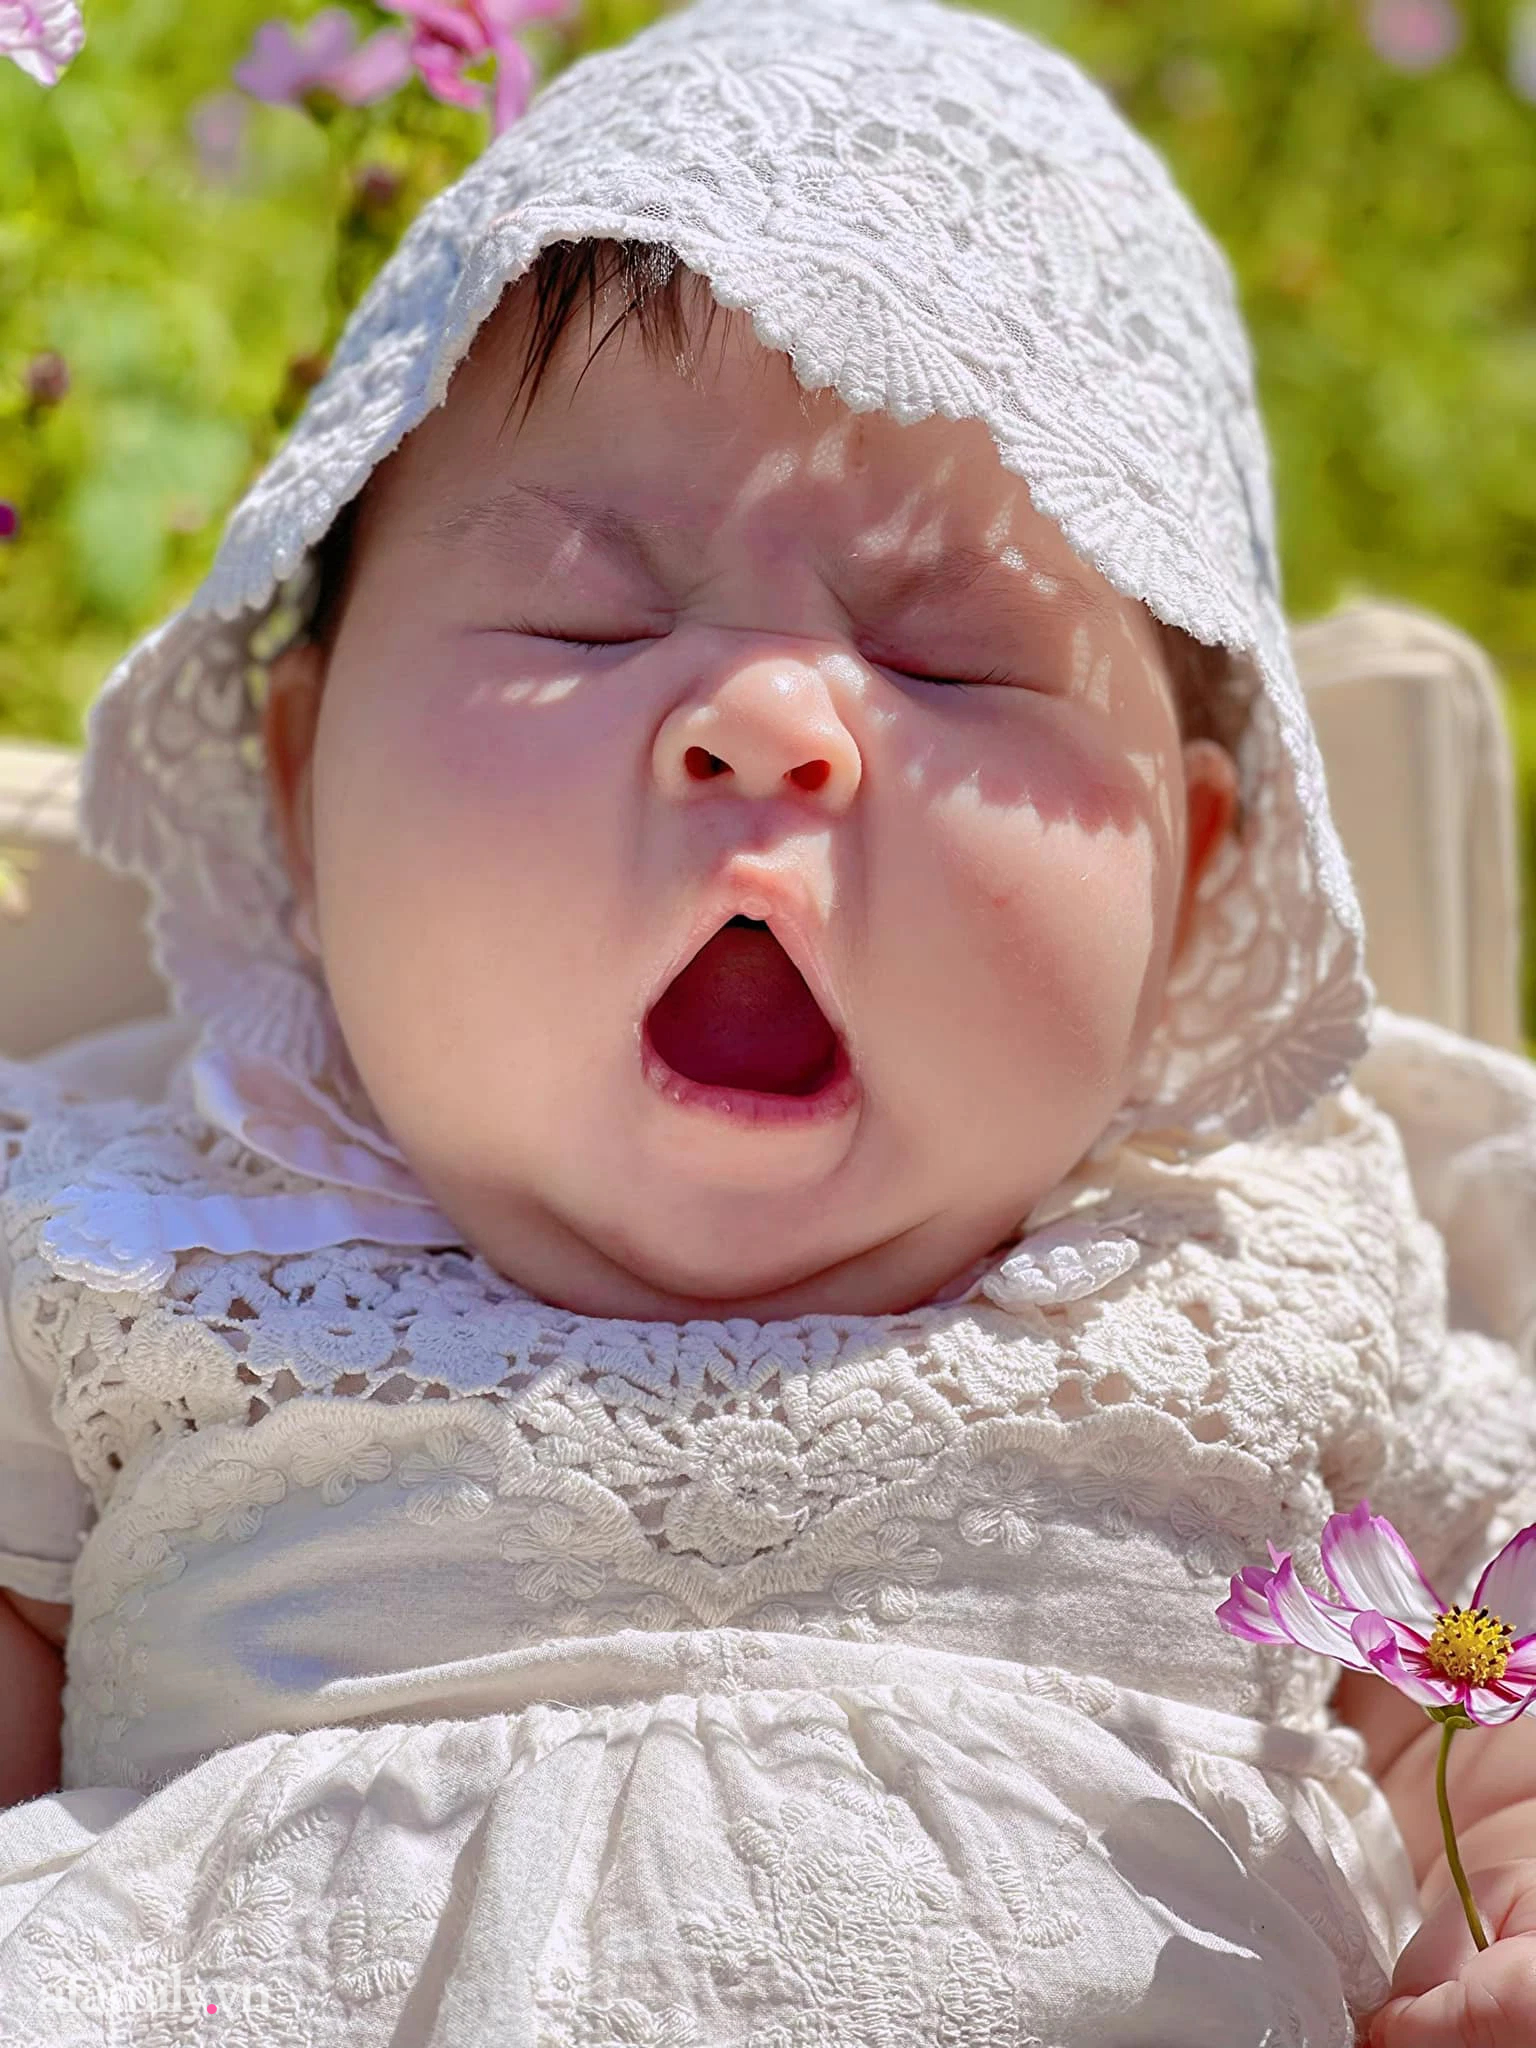 Chụp hình em bé khóc là một trong những khoảnh khắc cảm động nhất. Hãy xem ngay những bức ảnh đáng yêu và chân thực nhất của các em bé khóc để tận hưởng và cảm nhận tình cảm yêu thương đong đầy.